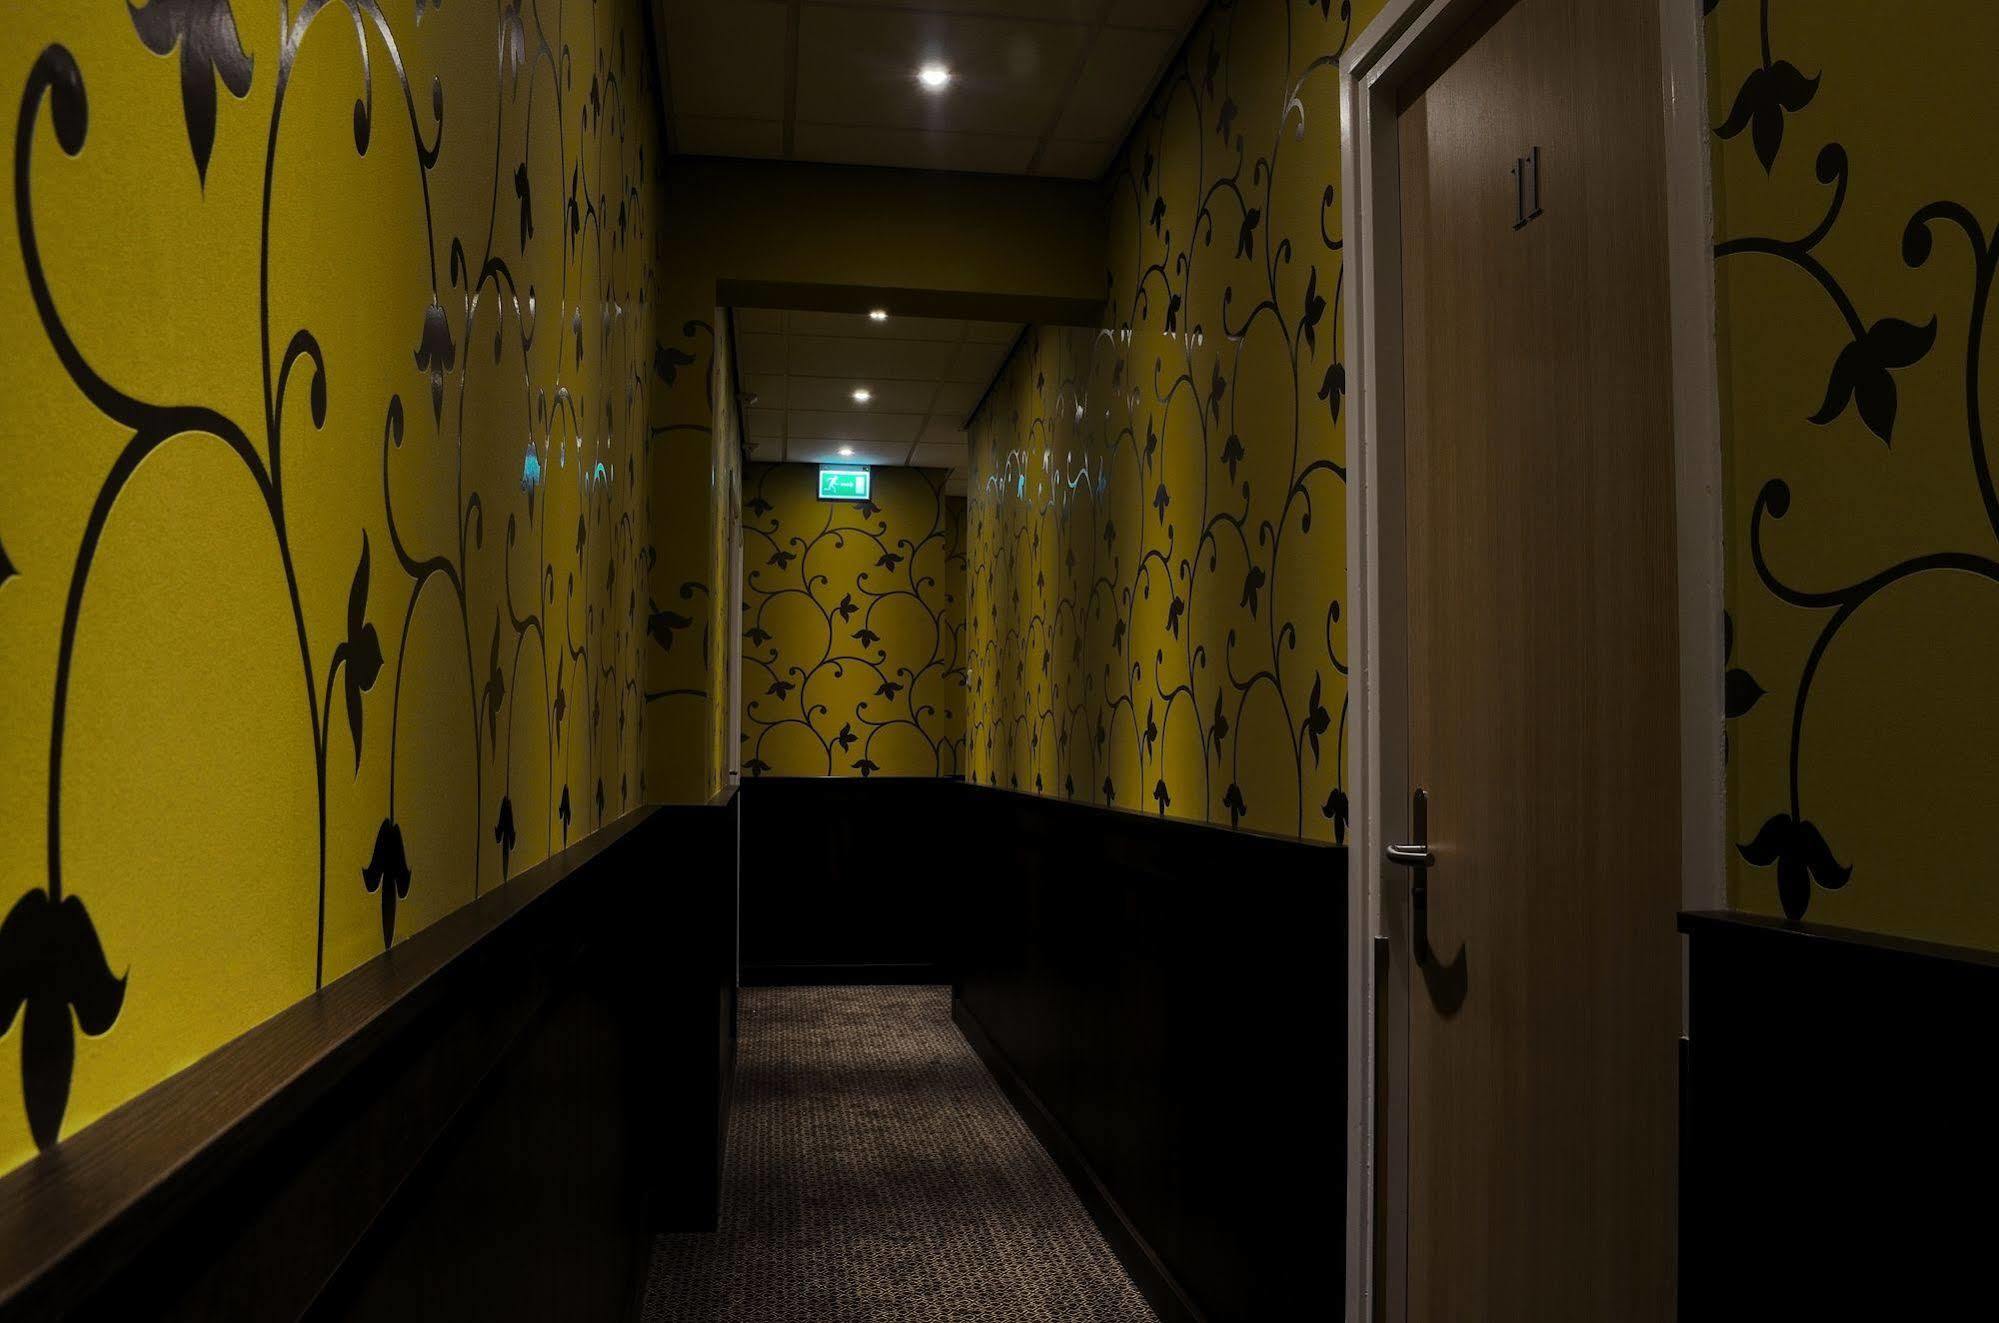 Hotel Nicolaas Witsen Amszterdam Kültér fotó